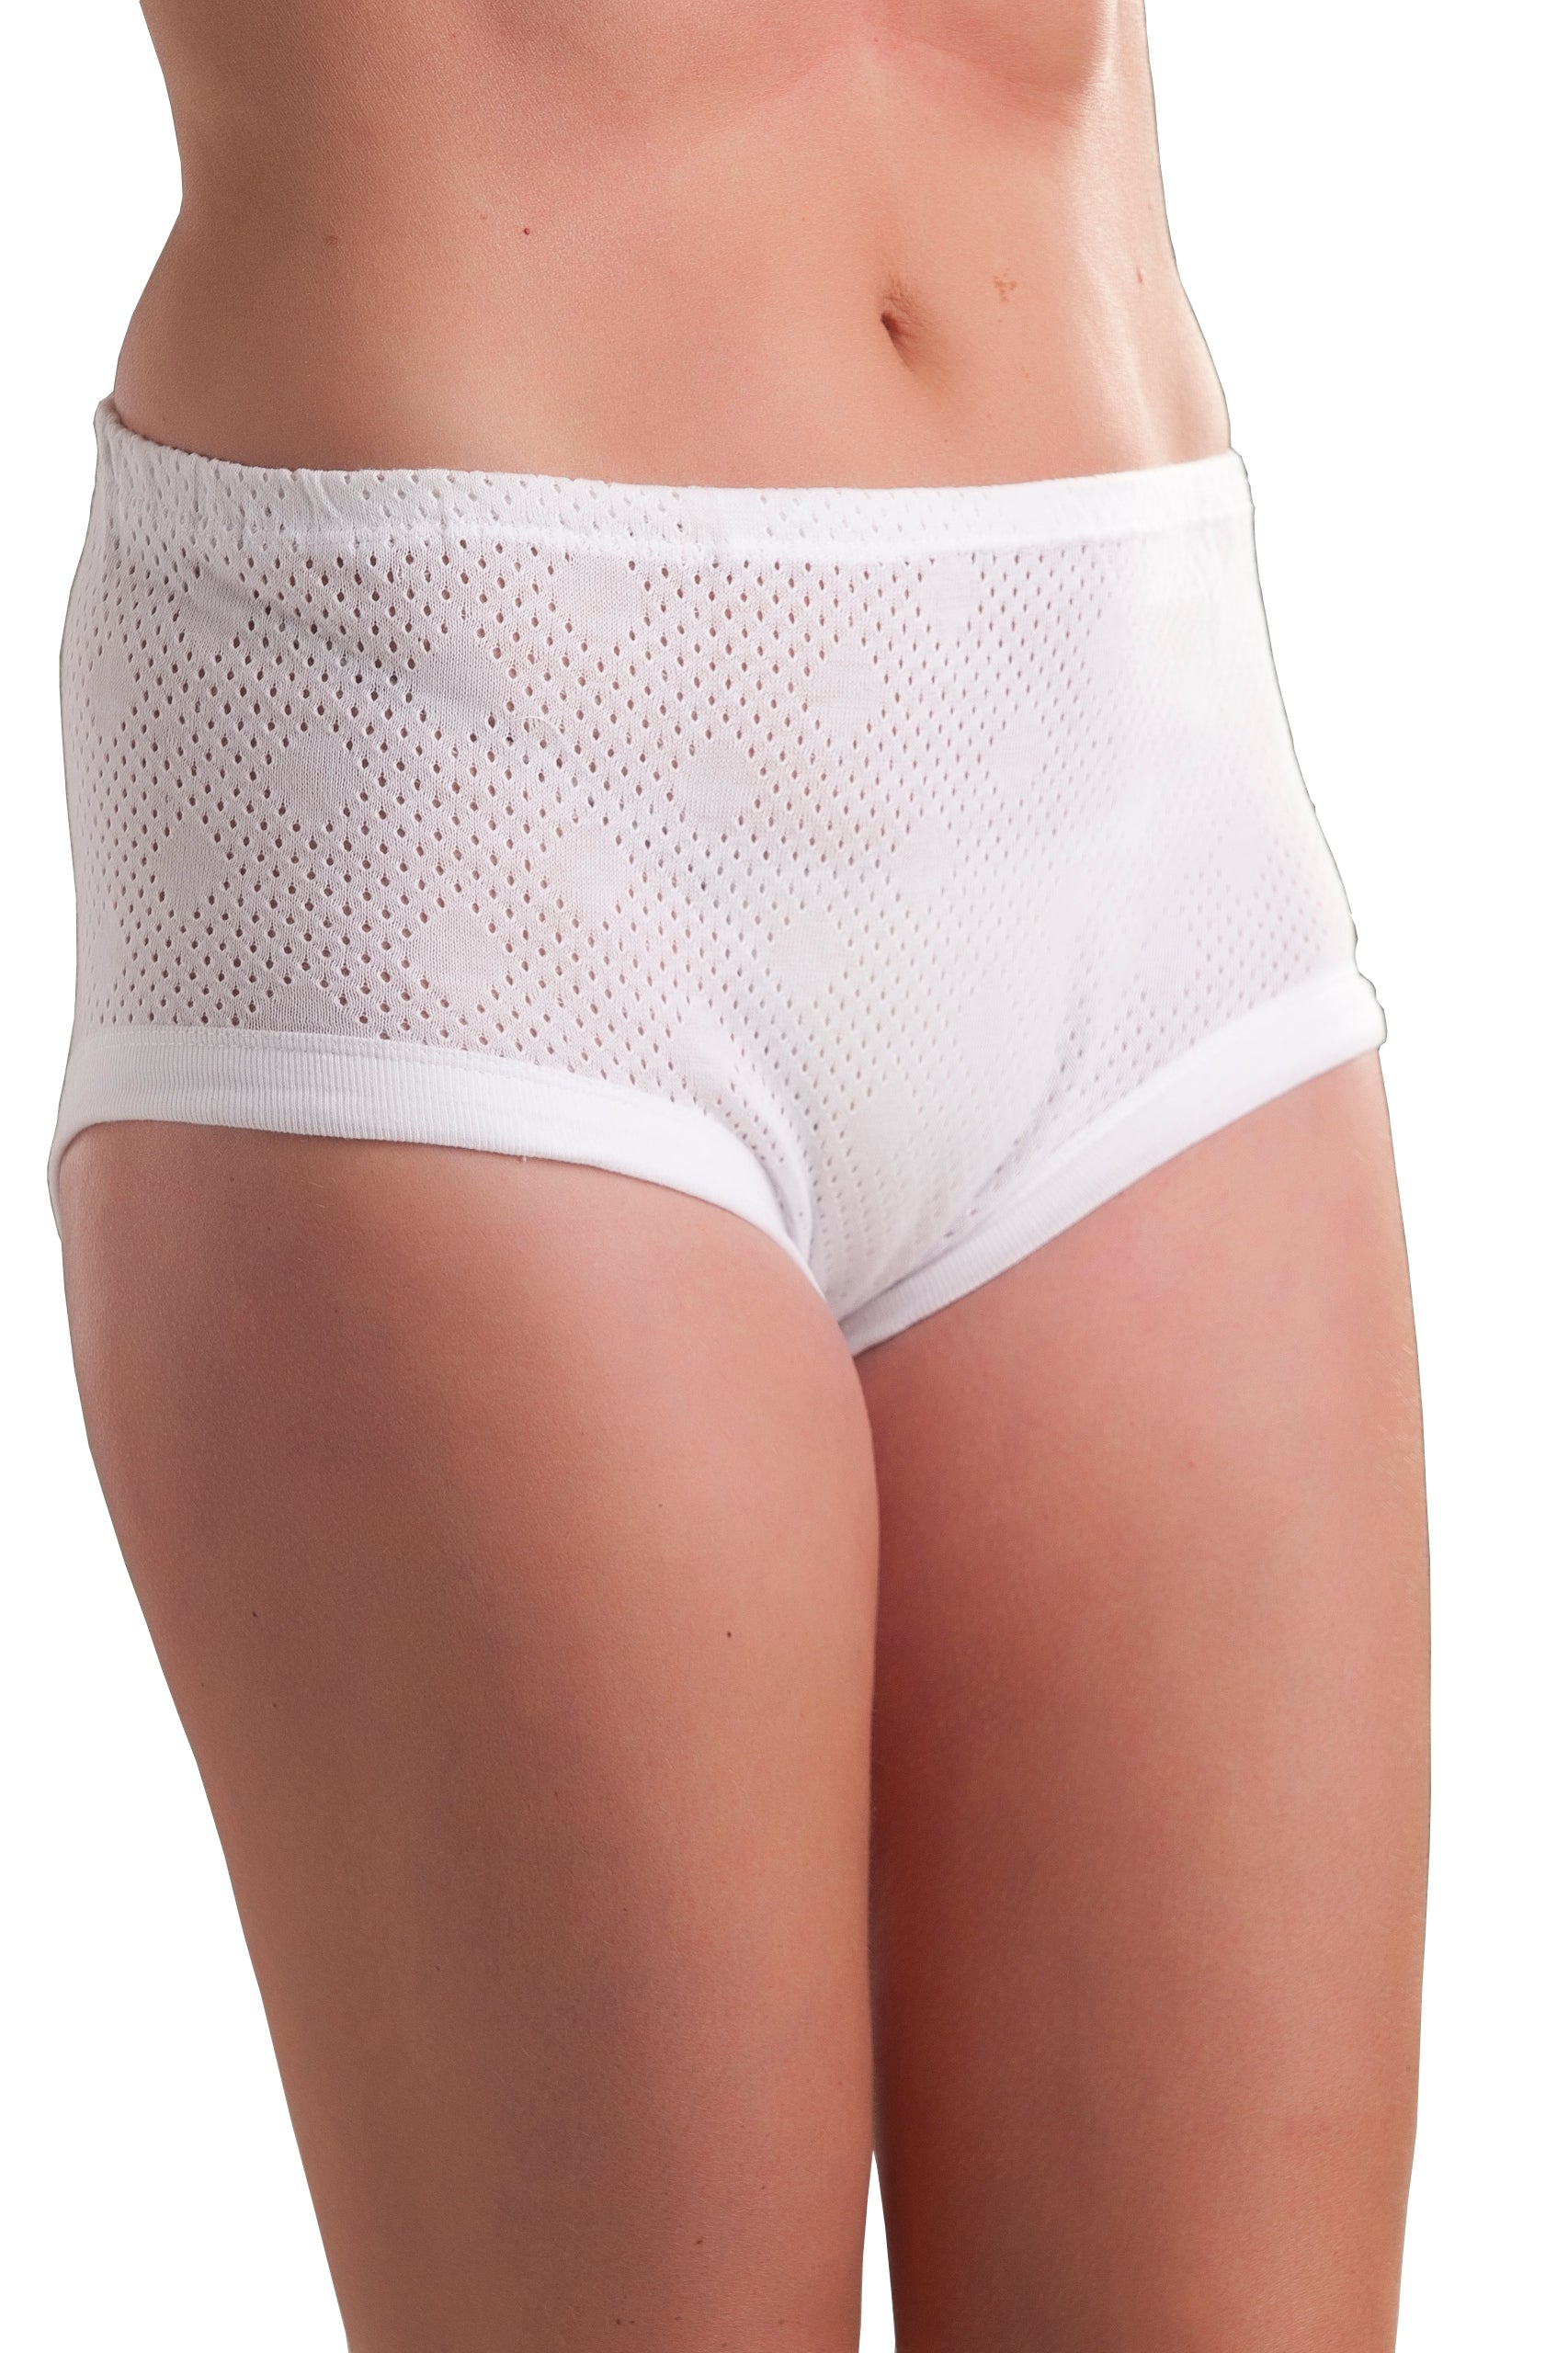 XWSM 5-Pack Soft 100% Cotton Underwear Full Briefs Panty Sleep